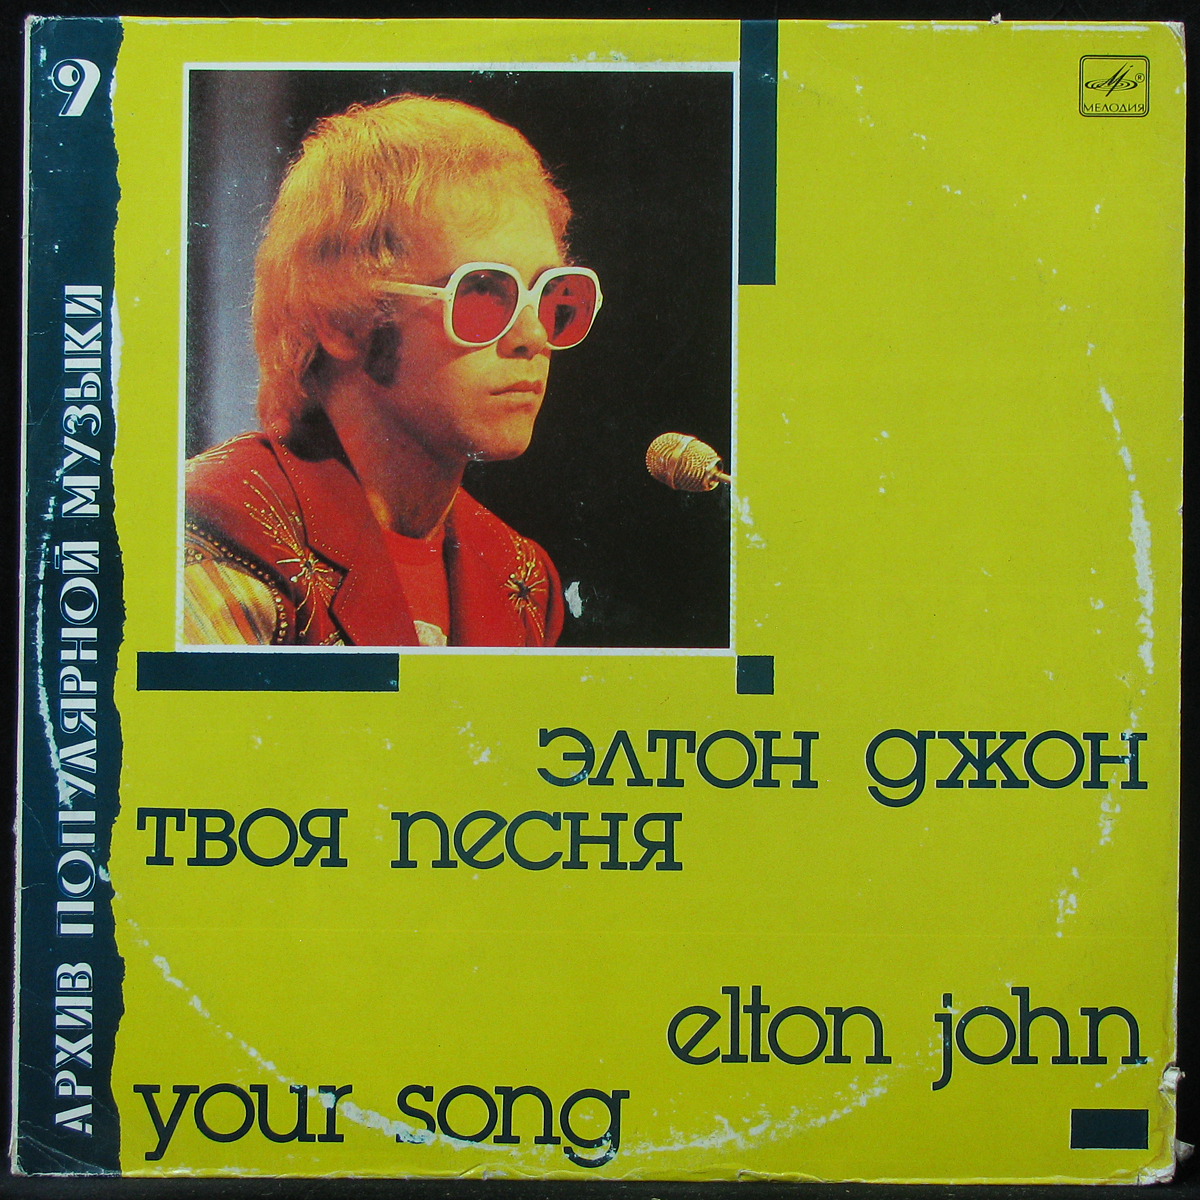 Elton John пластинки. Элтон Джон альбомы. Фото пластинок Элтона Джона. Виниловая пластинка Элтона Джона в Советском Союзе.